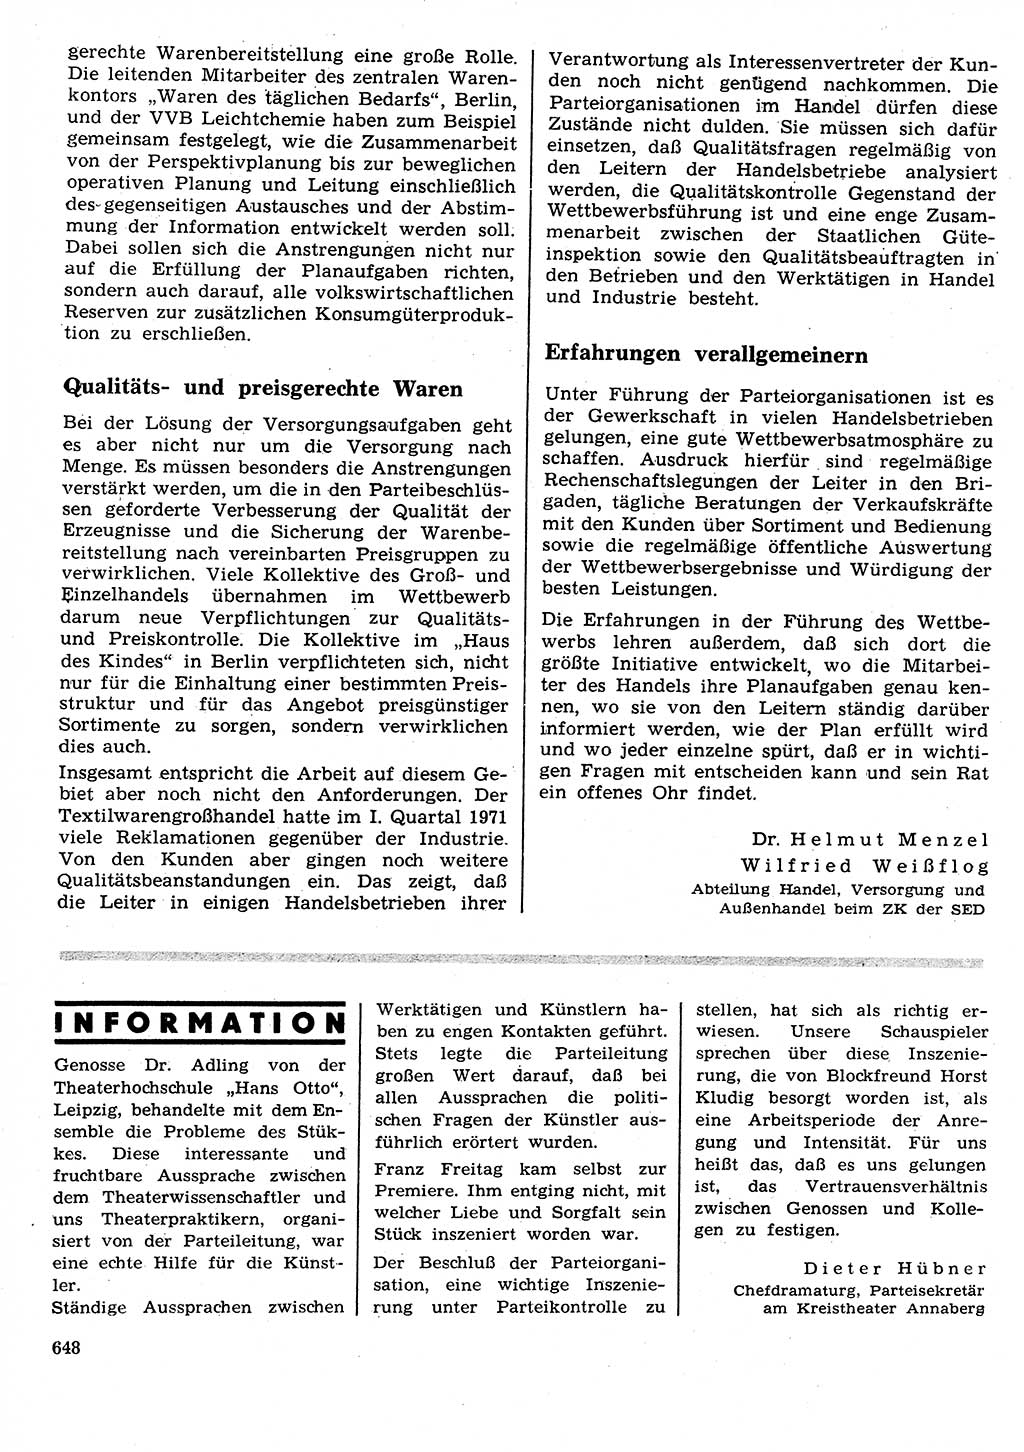 Neuer Weg (NW), Organ des Zentralkomitees (ZK) der SED (Sozialistische Einheitspartei Deutschlands) für Fragen des Parteilebens, 26. Jahrgang [Deutsche Demokratische Republik (DDR)] 1971, Seite 648 (NW ZK SED DDR 1971, S. 648)